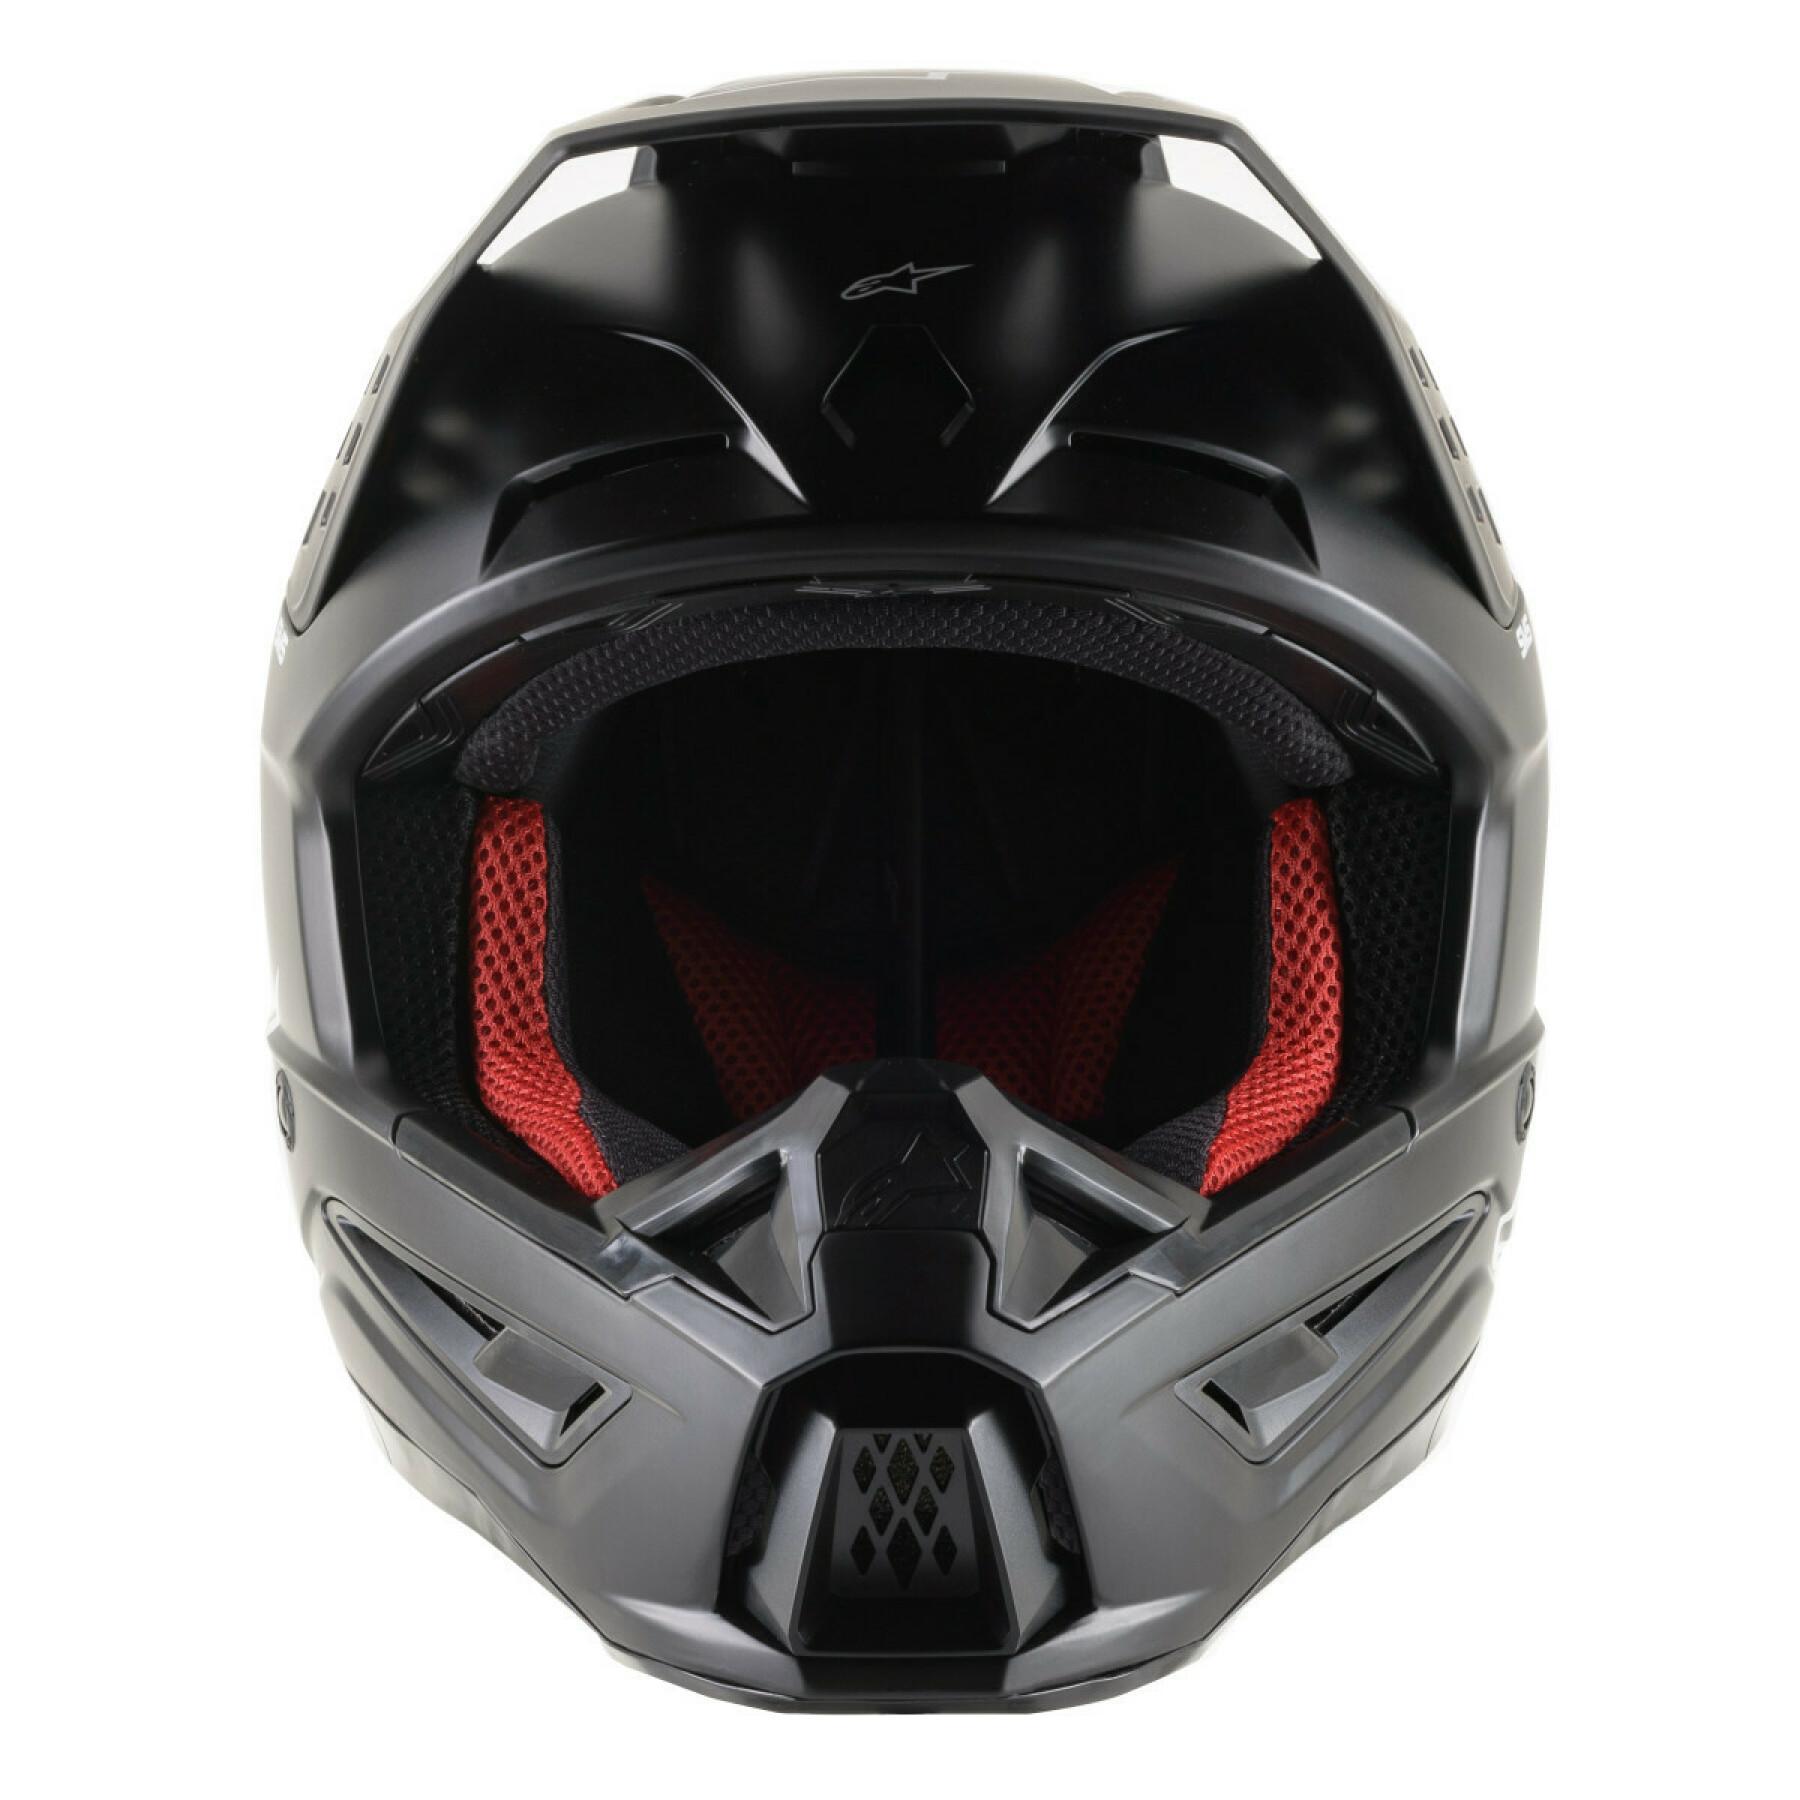 Motorcycle helmet Alpinestars SM5 solid